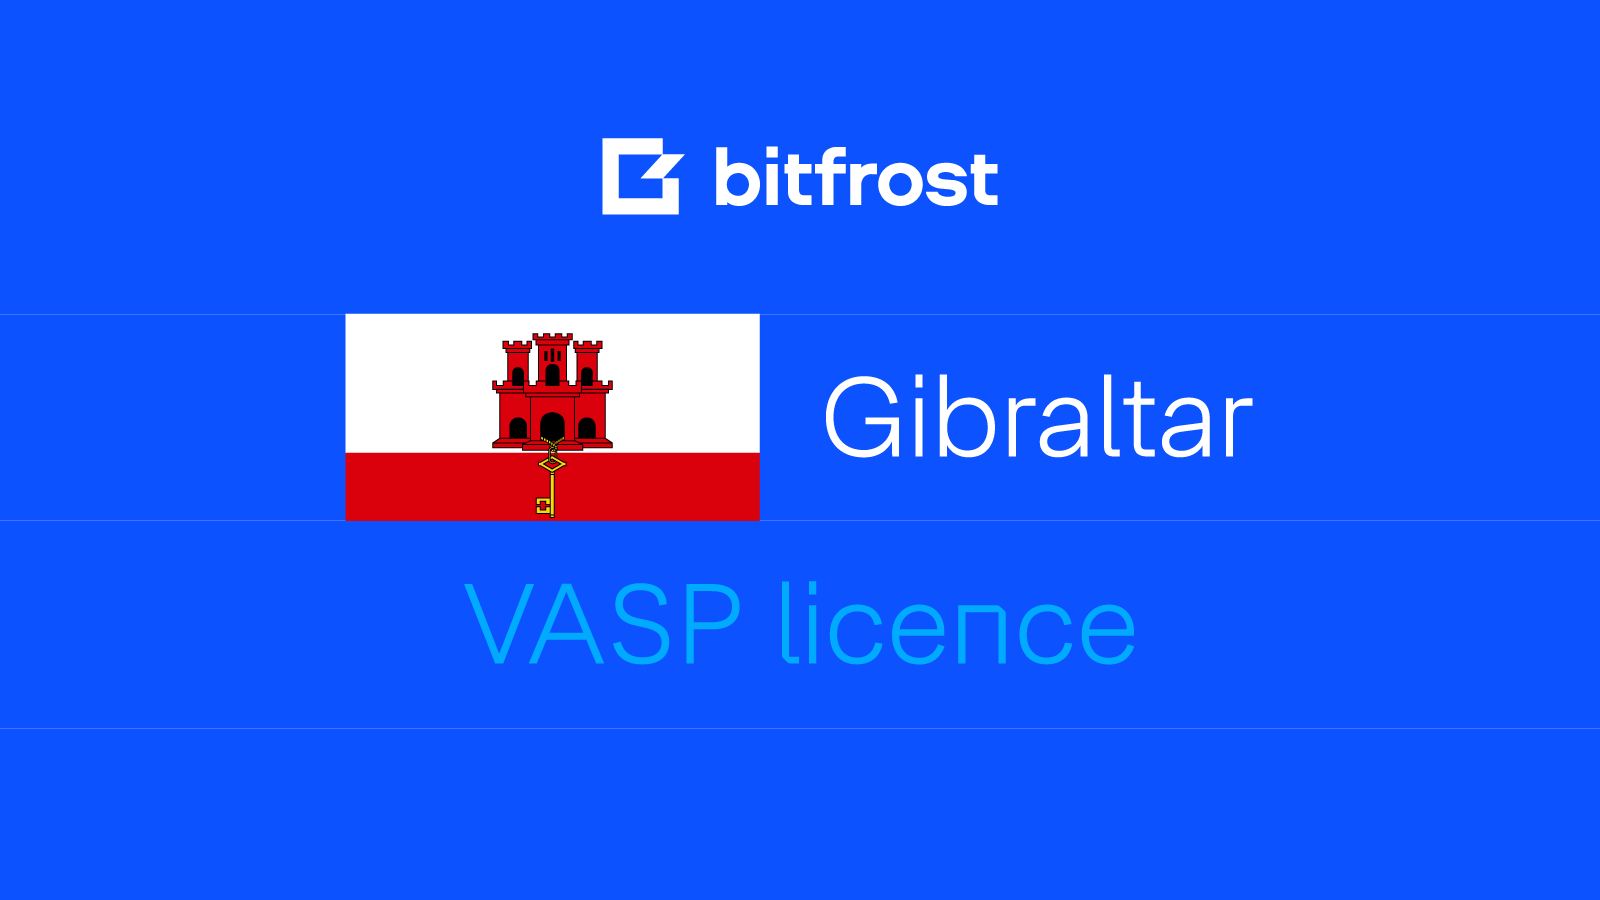 Bitfrost secures VASP registration in Gibraltar